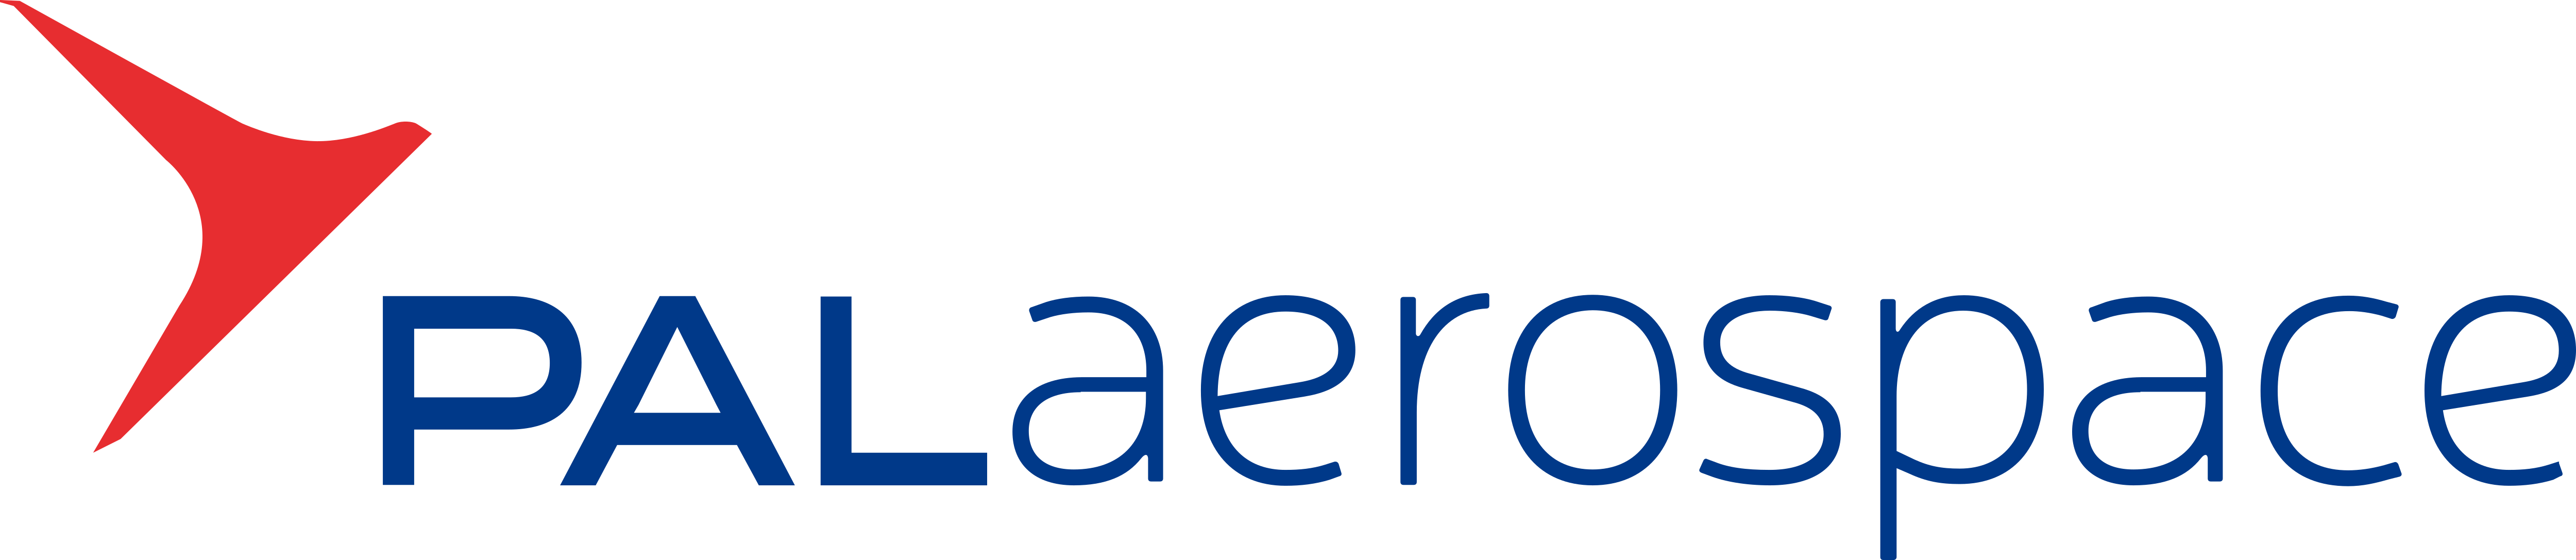 PAL Aerospace – Logos Download